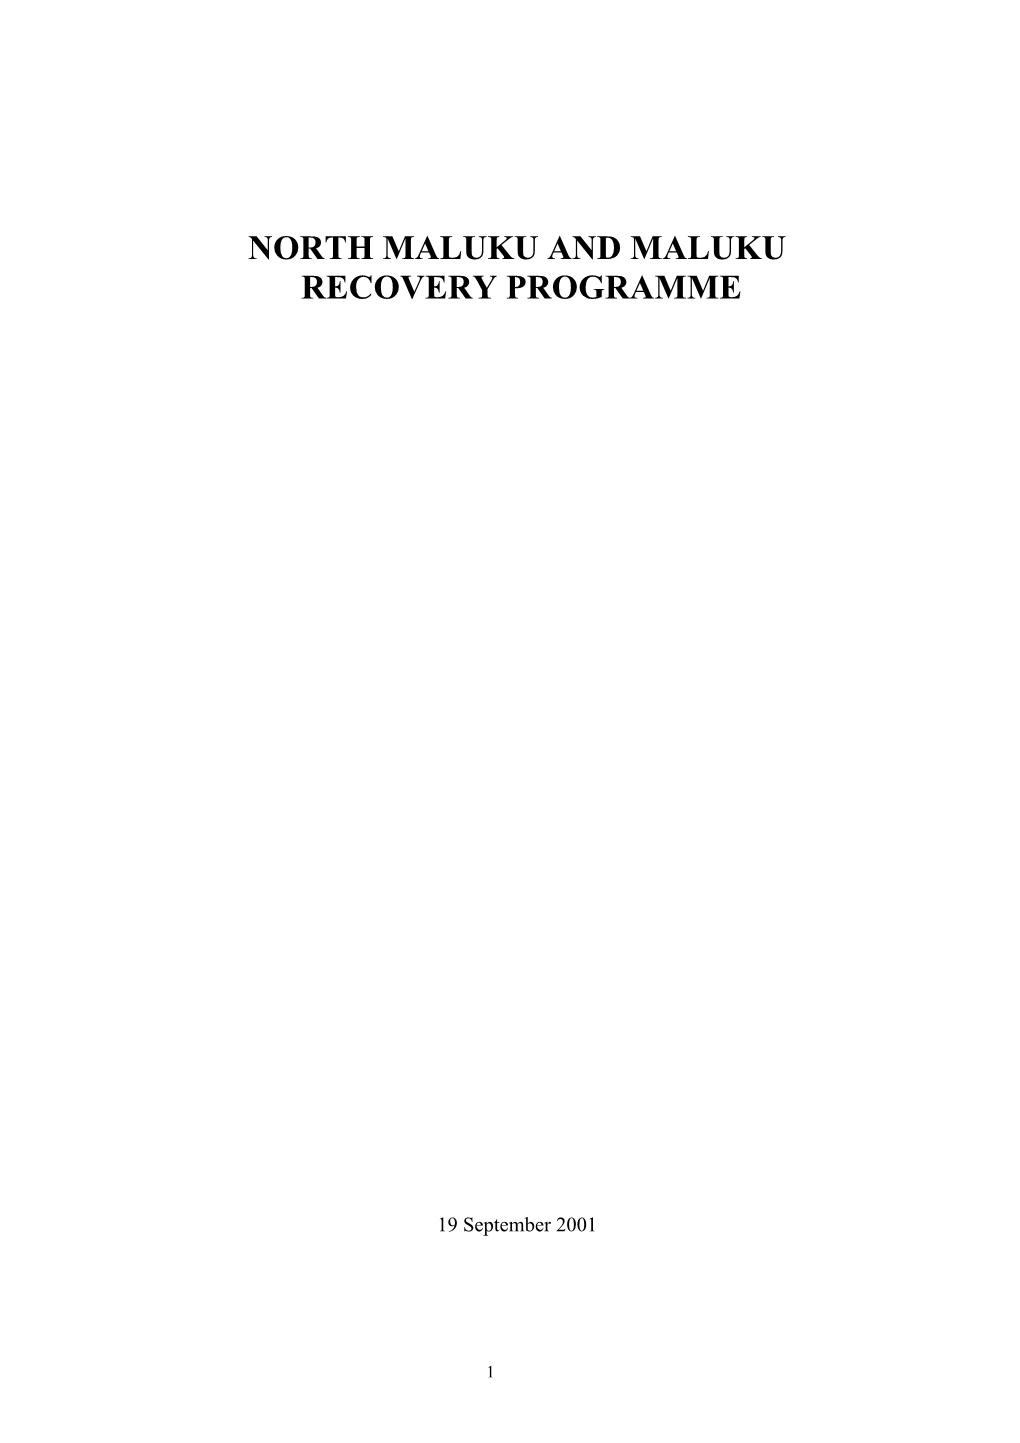 North Maluku and Maluku Recovery Programme